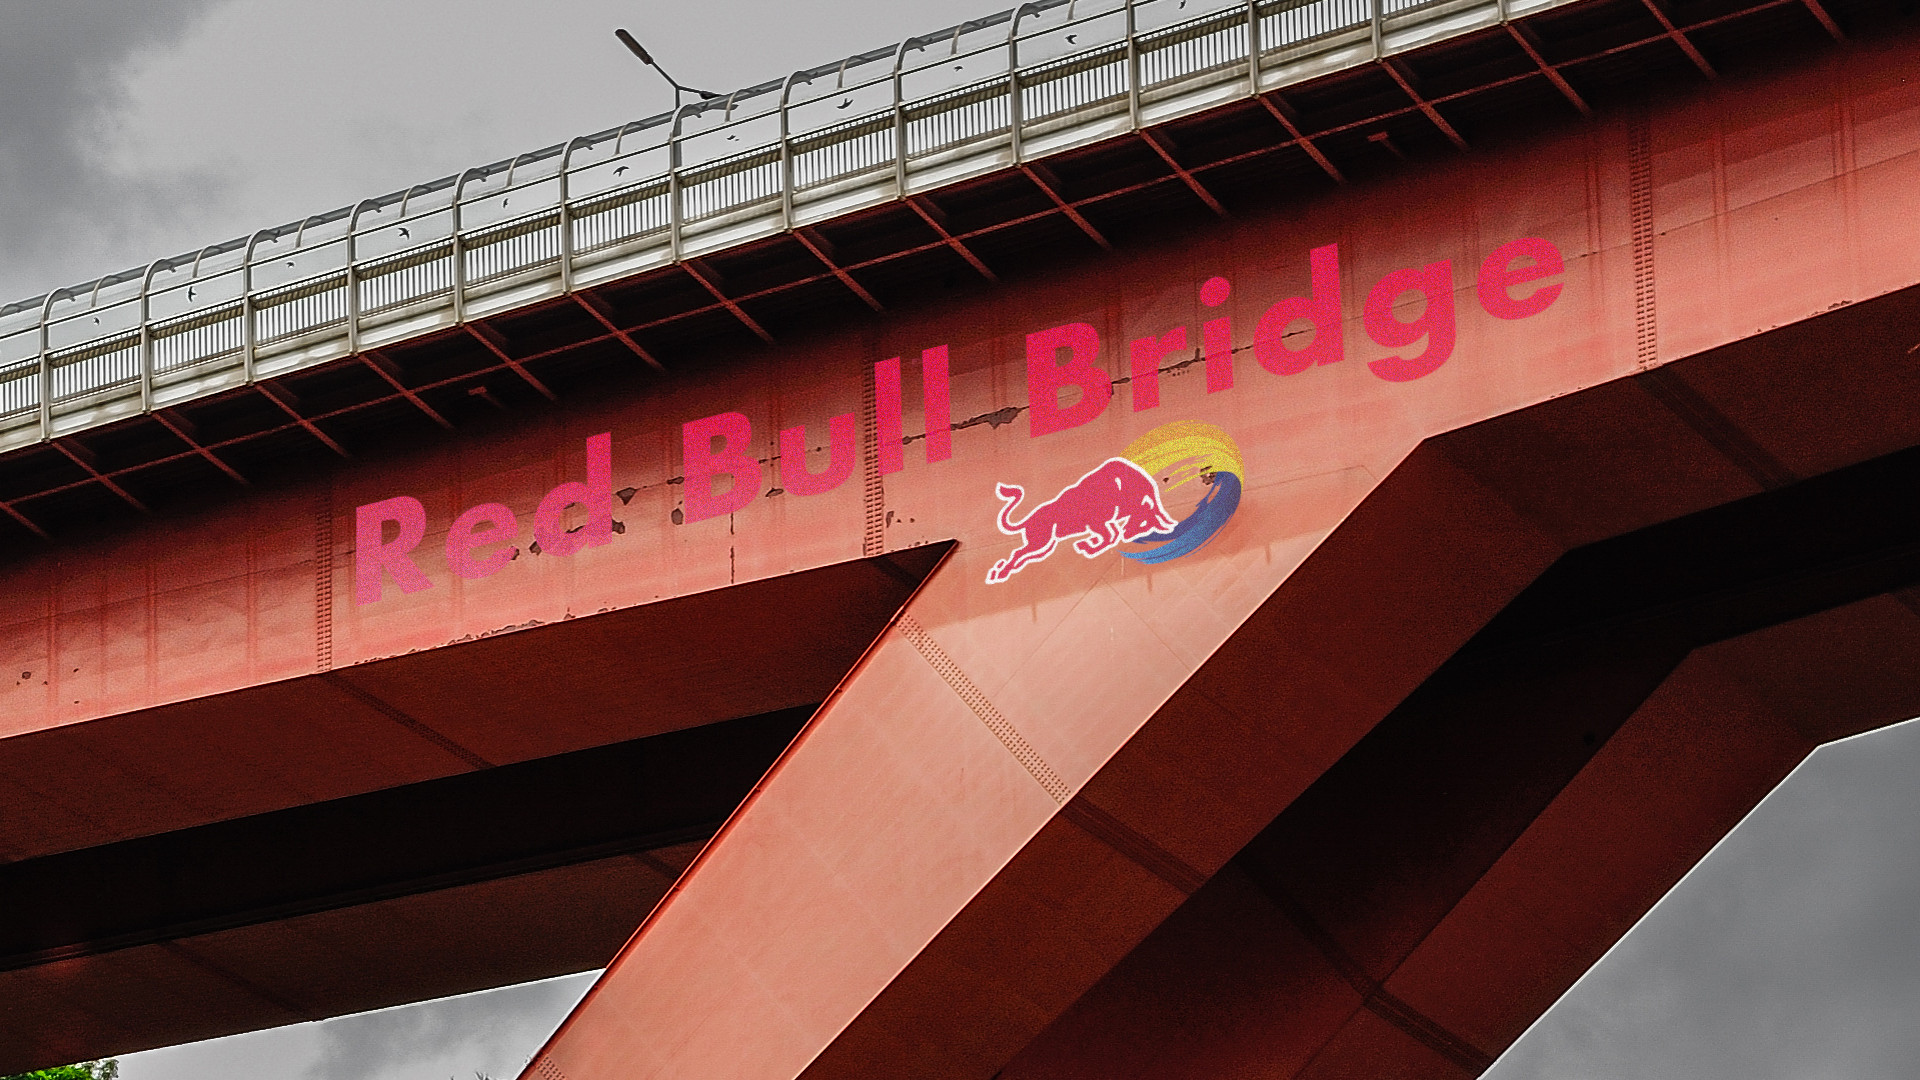 Red Bull Bridge Luxembourg